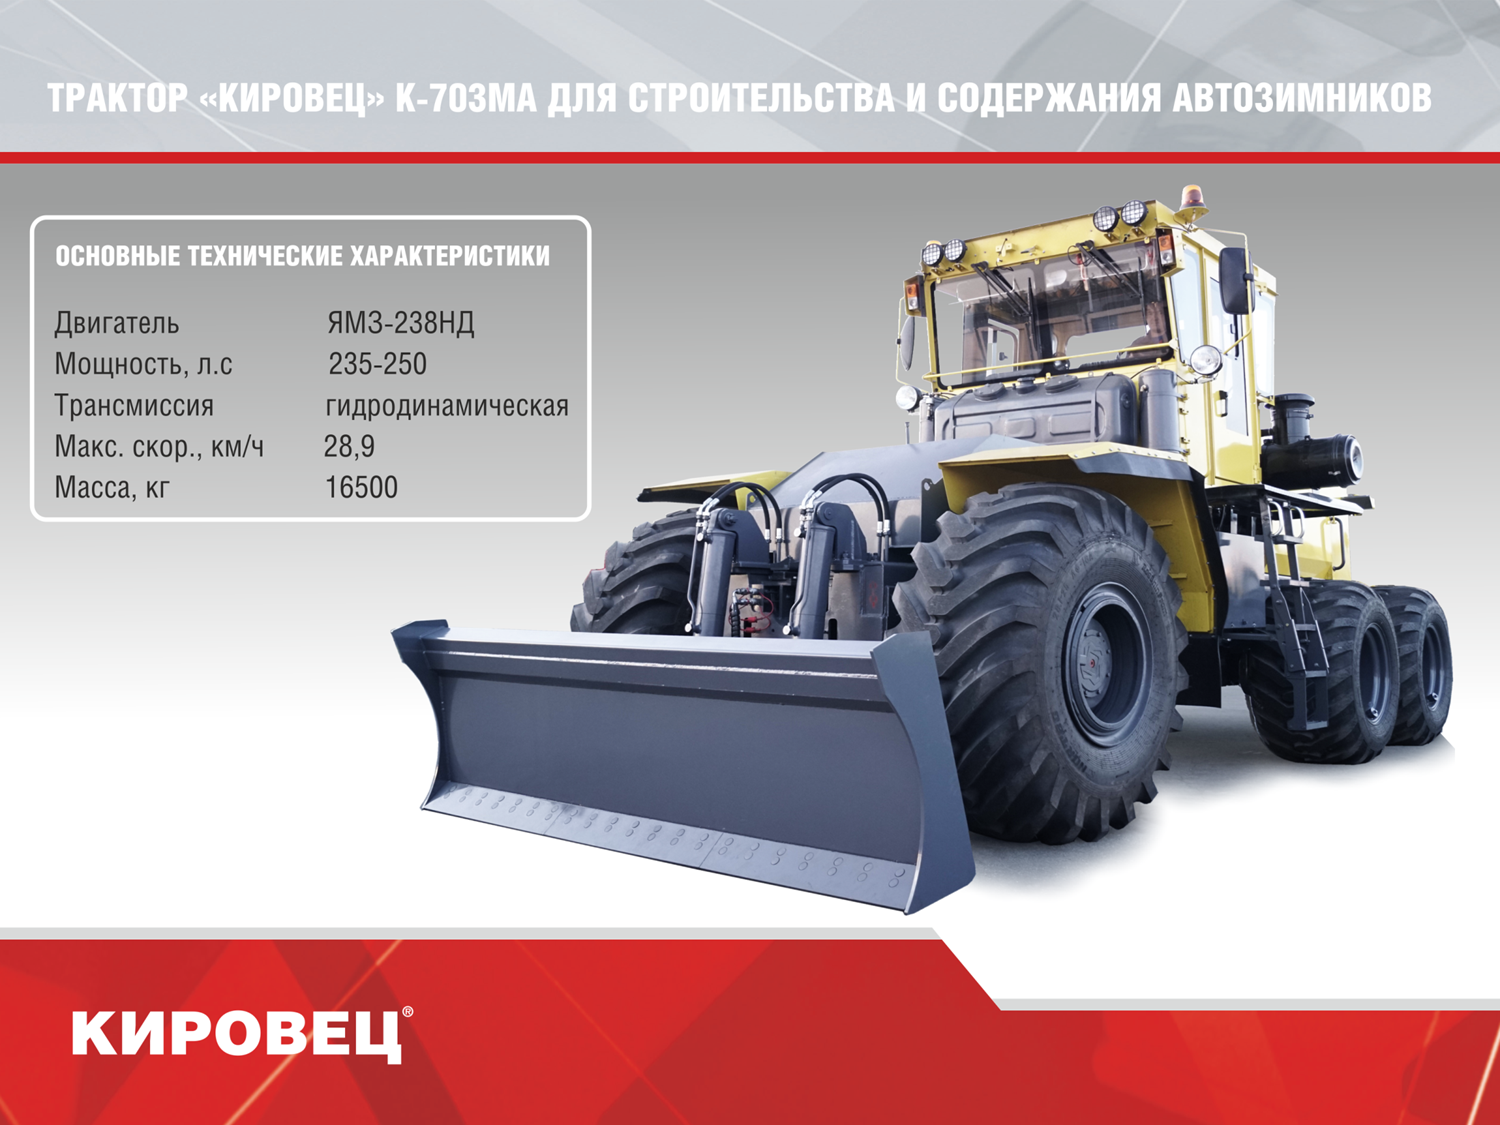 Кировец к-701: технические характеристики, двигатель, коробка и устройство трактора, аналоги - все о тракторах